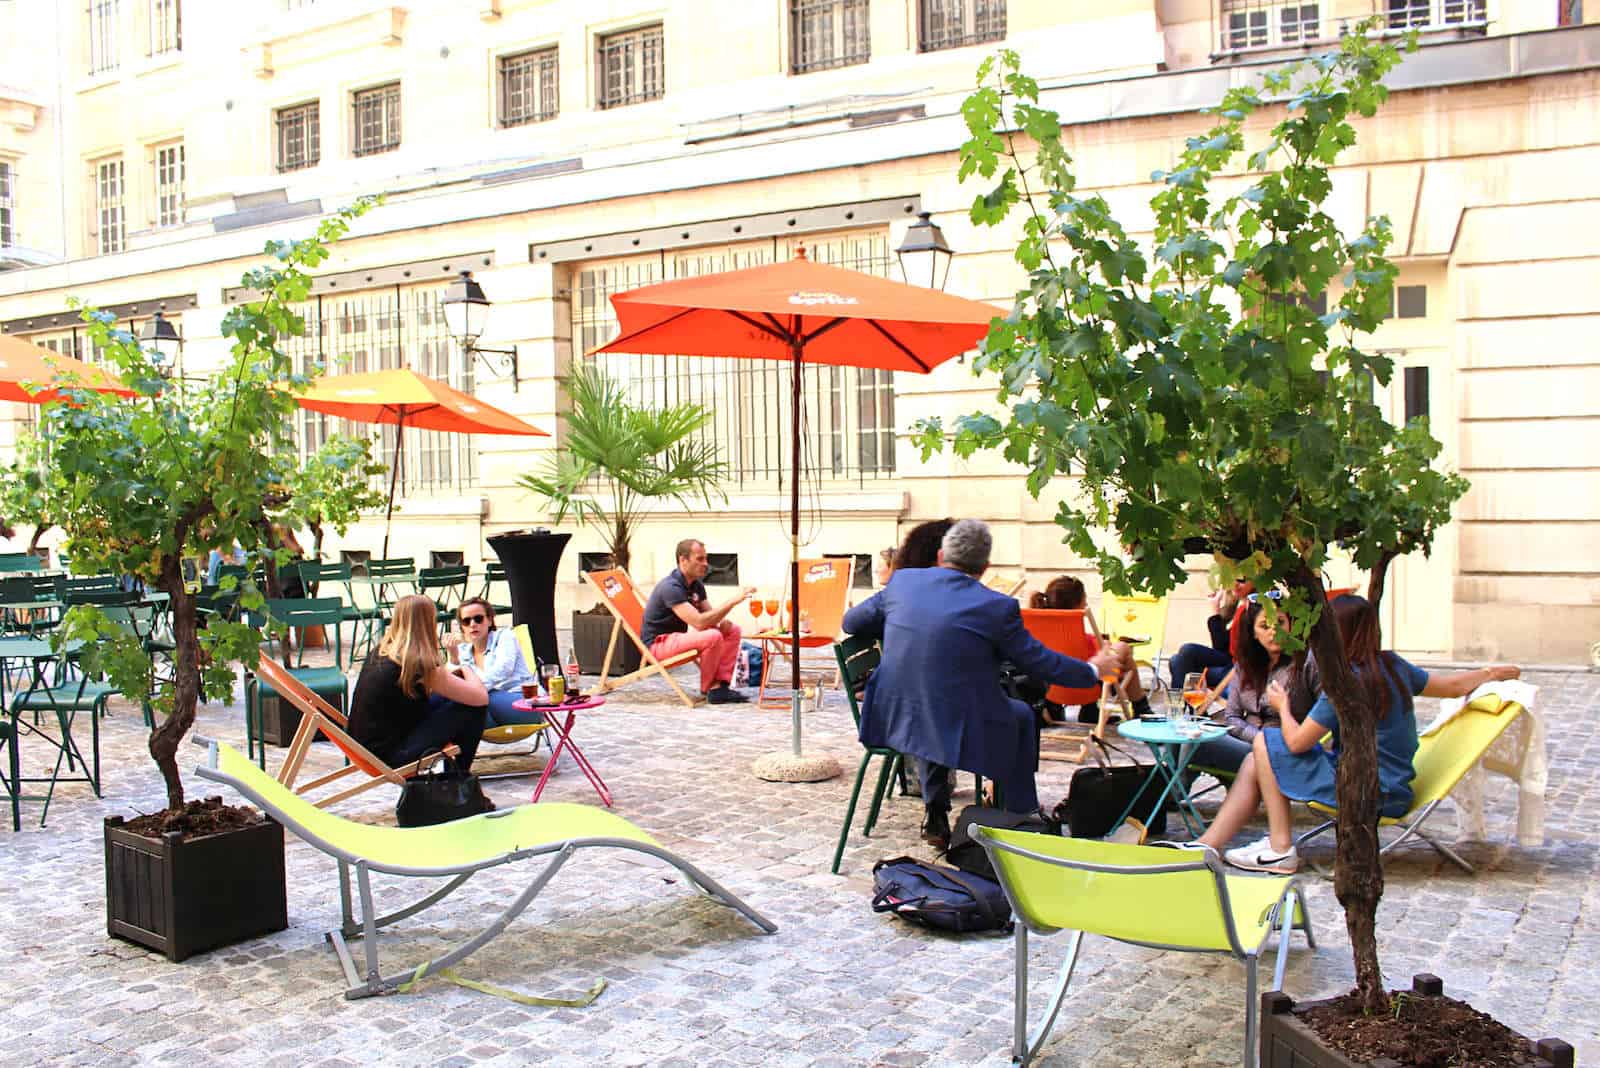 Café Cour: A Hidden Pop-up with Terrace in Paris’ Marais